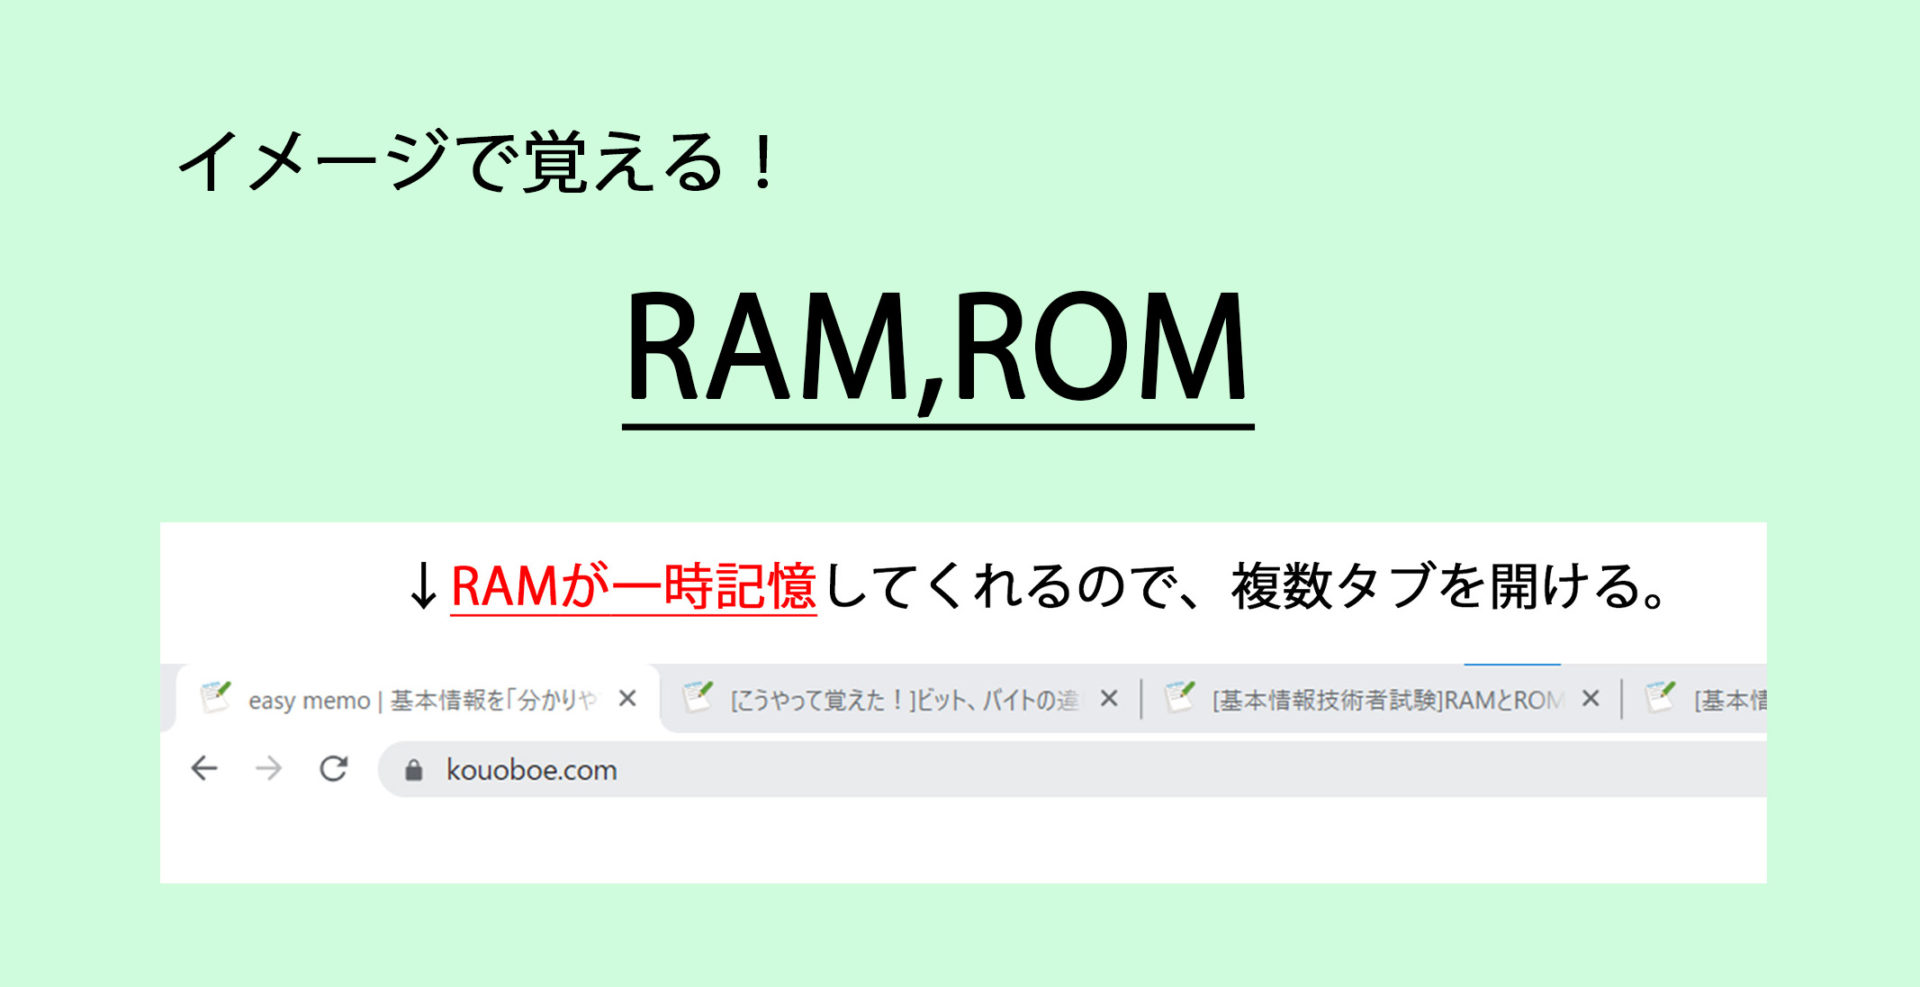 RAM、ROMとは